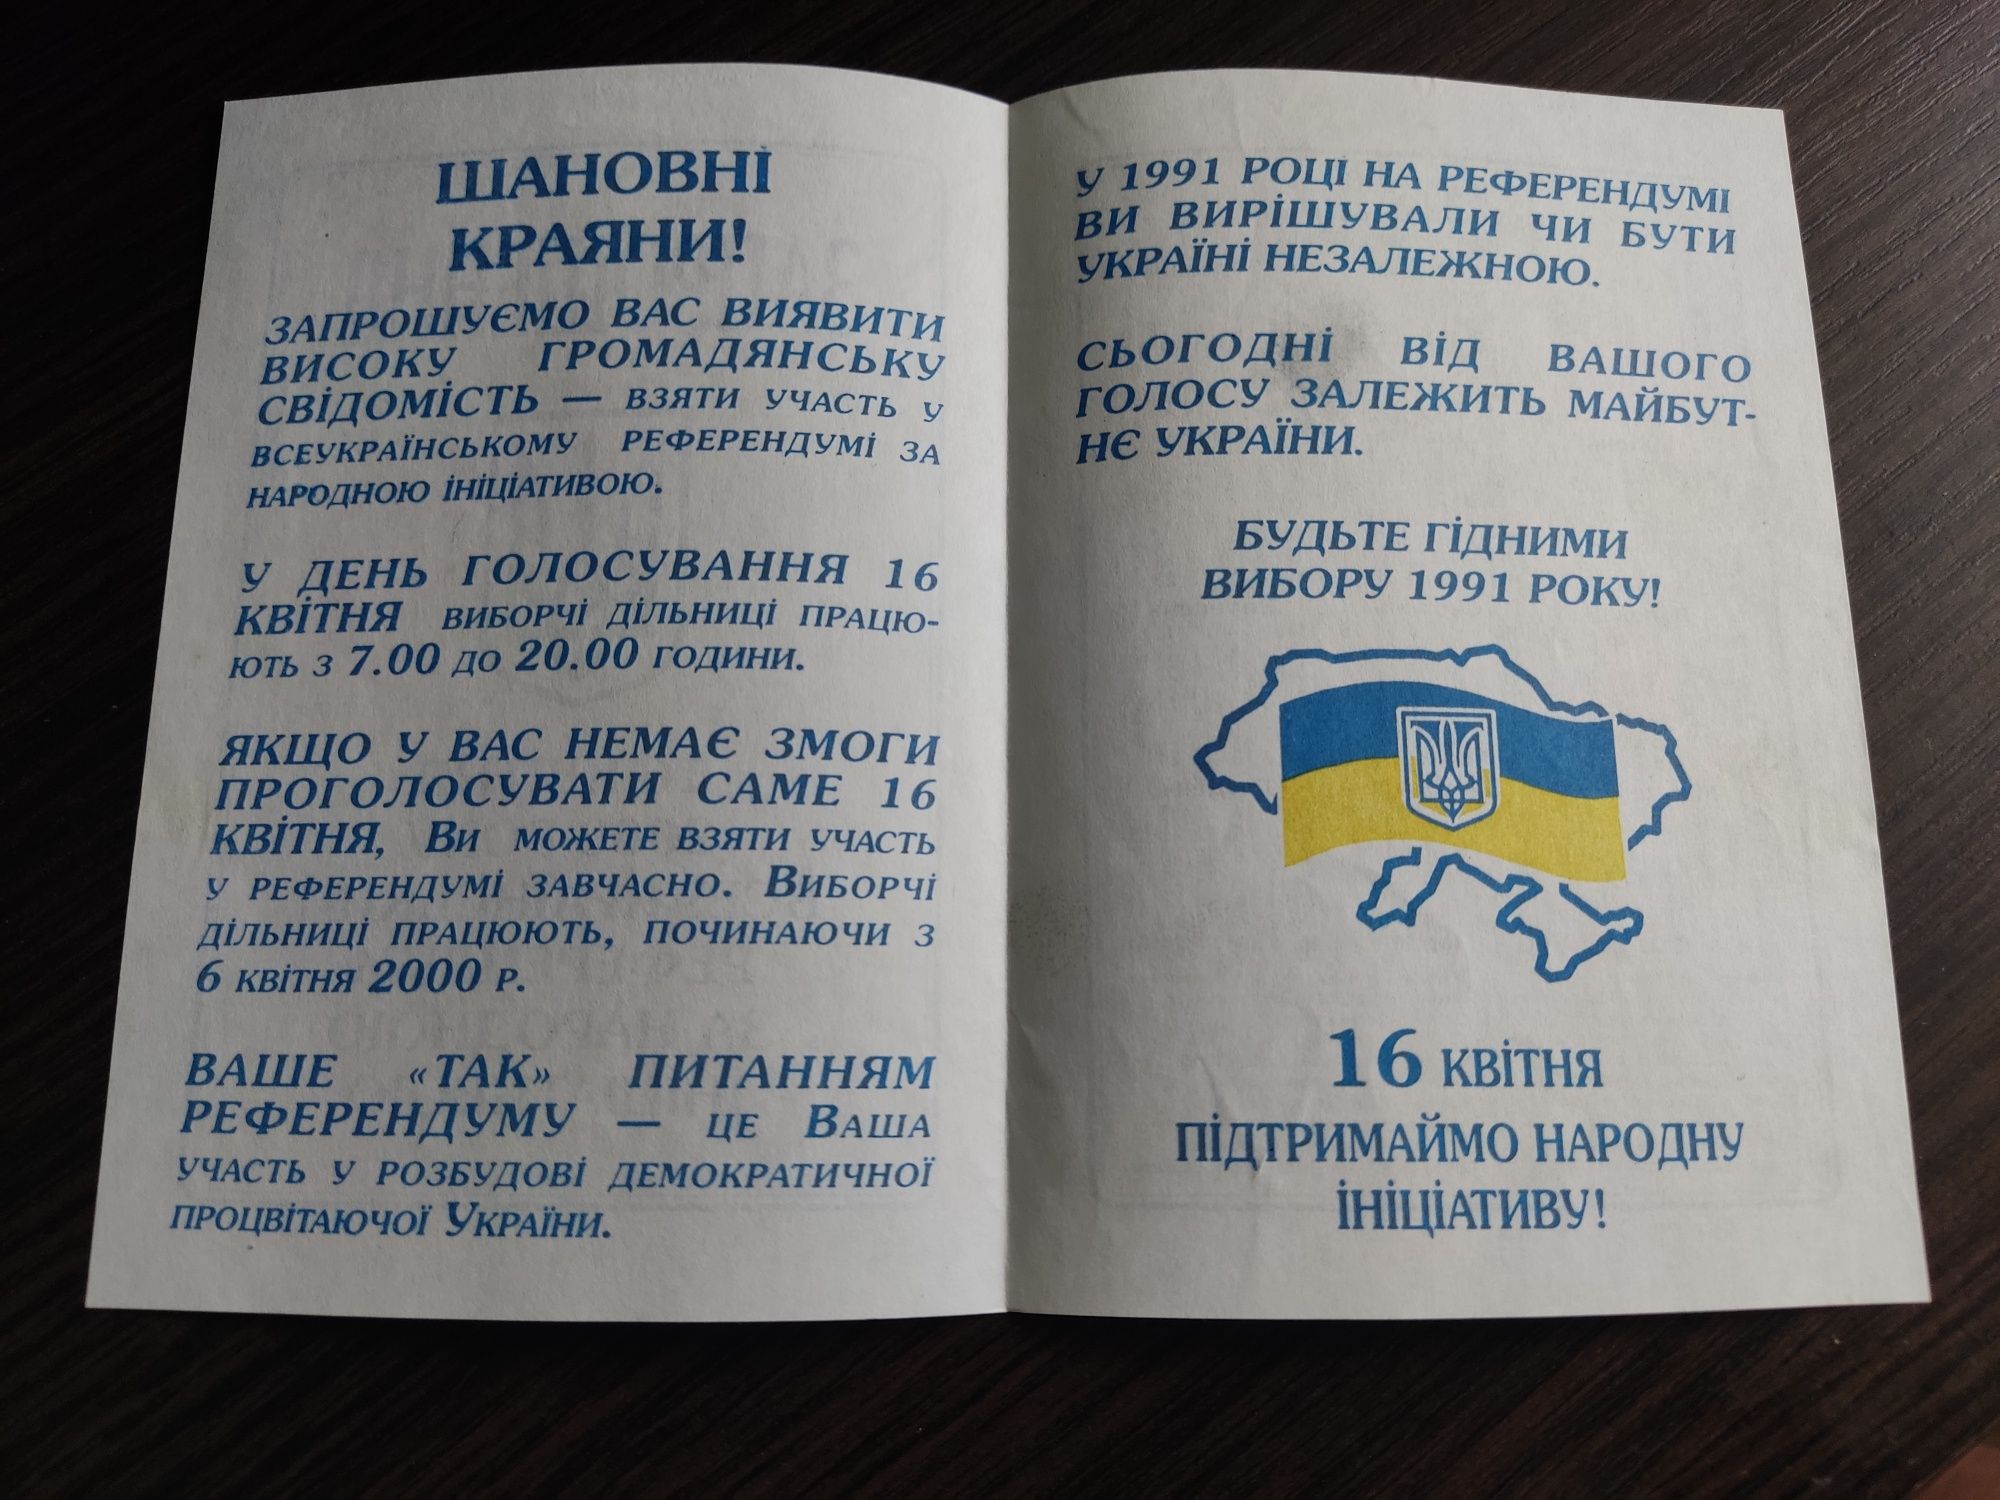 Запрошення 2000 року Всеукраїнський референдум